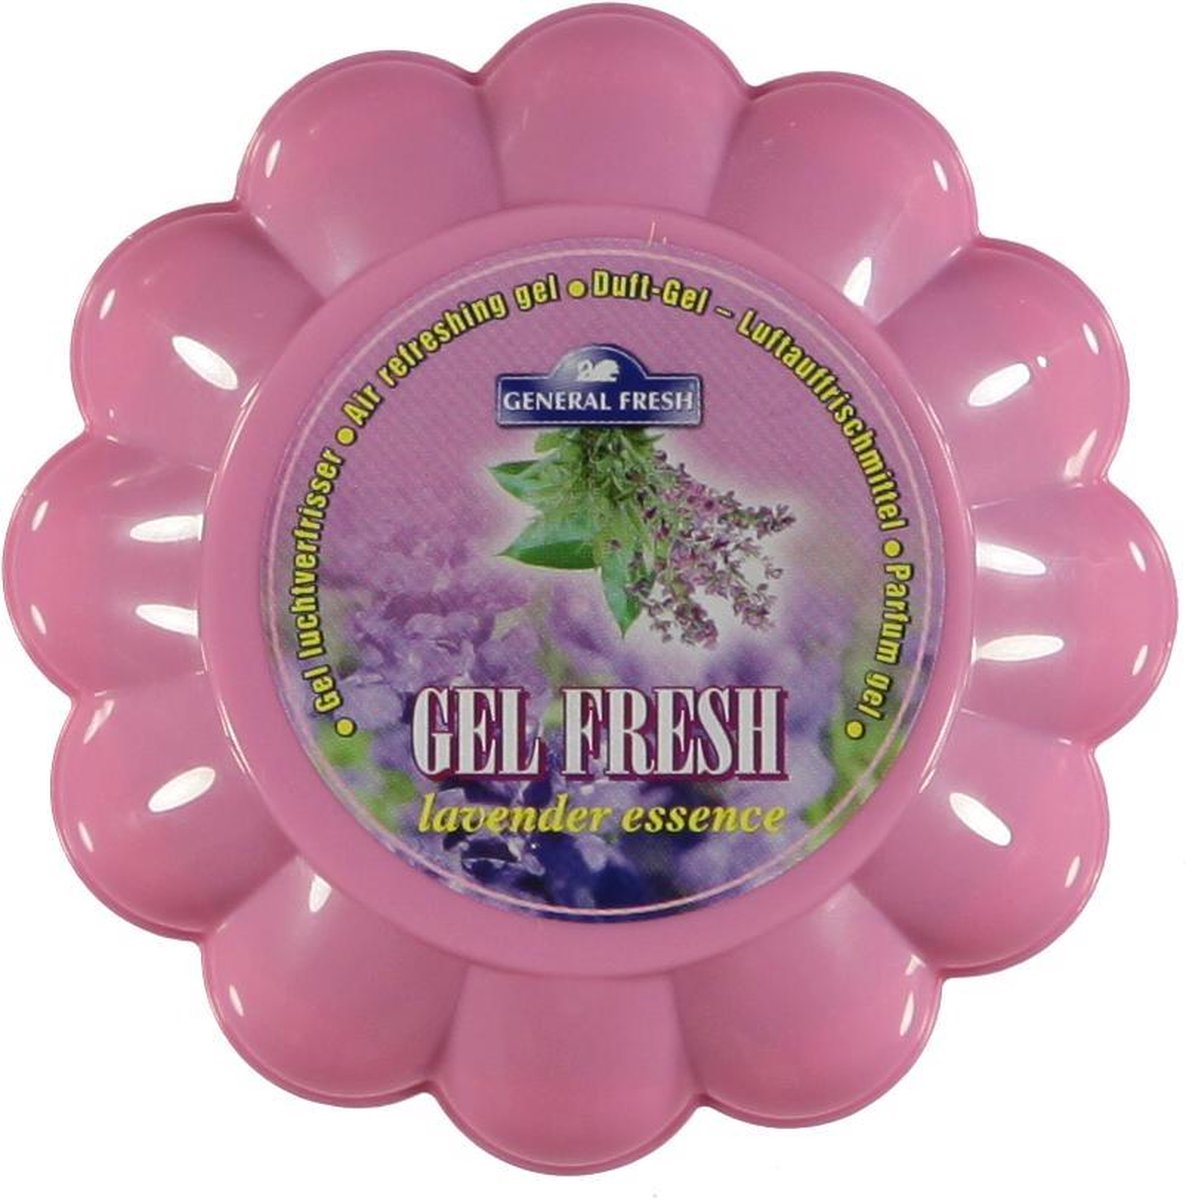 General fresh at home - Parfum gel - Gel luchtverfrisser - Gel fresh - LAVENDER